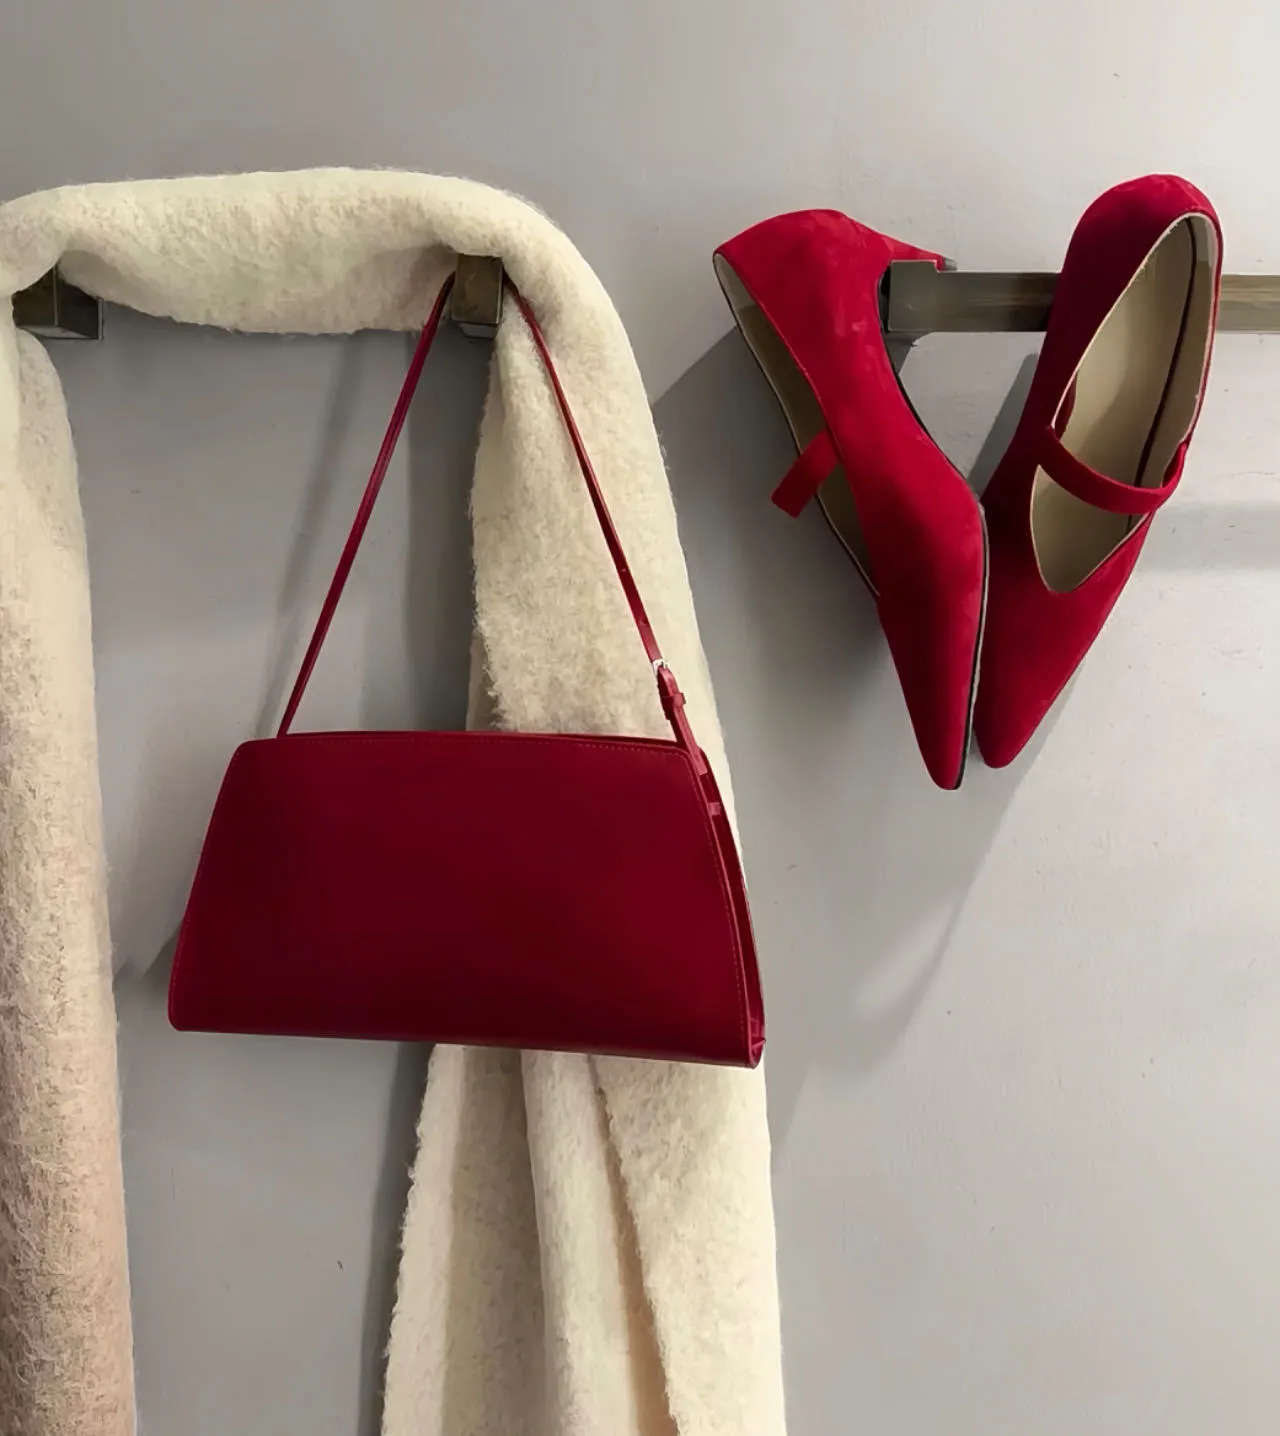 Torba projektowa w stylu francuskiego dla kobiet z krętą torbą na podnopt